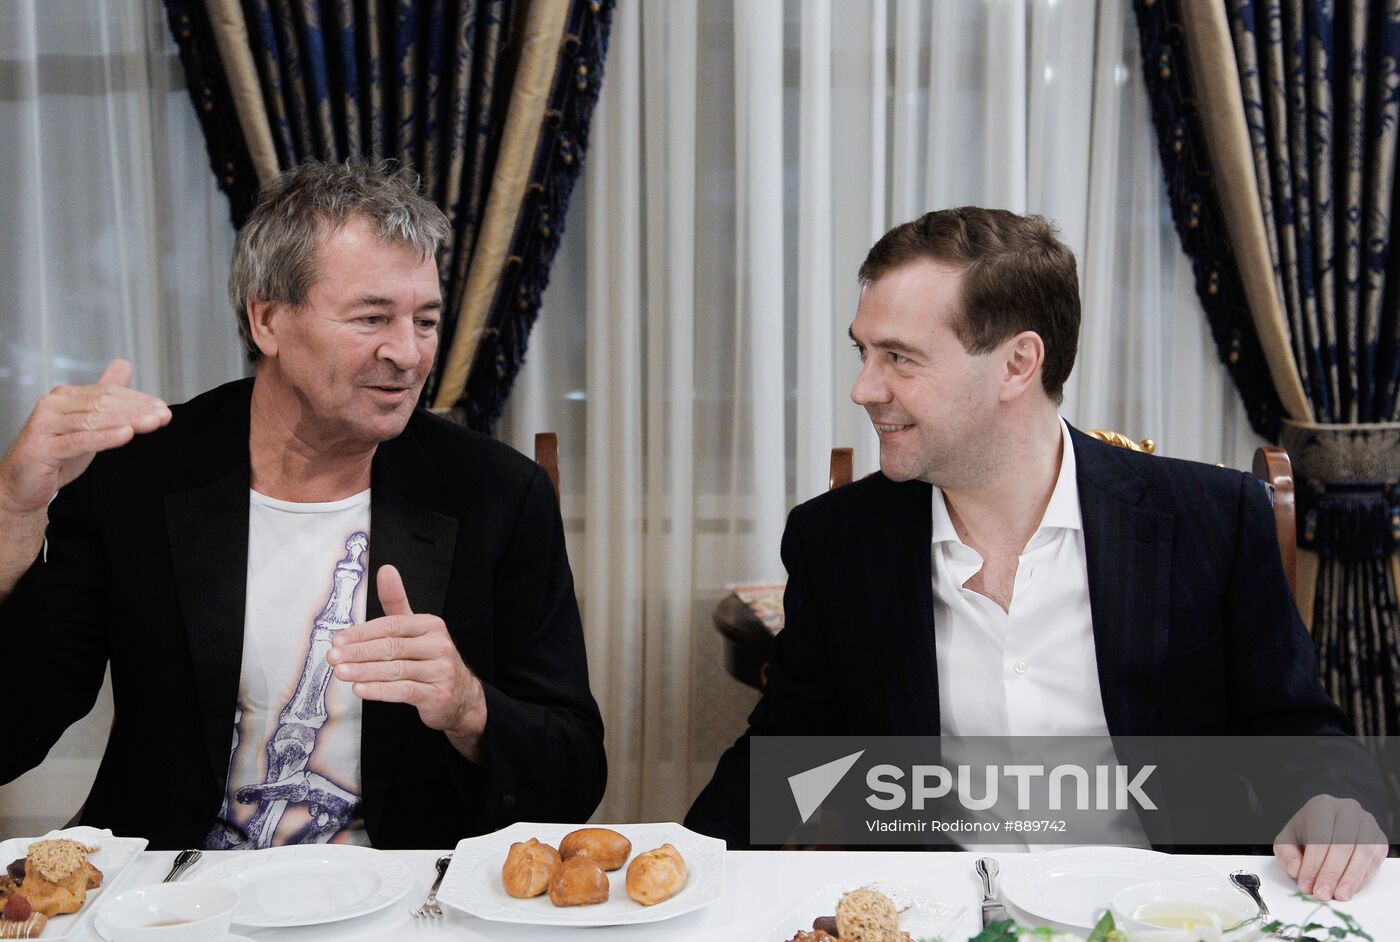 Dmitry Medvedev meets with Deep Purple band members